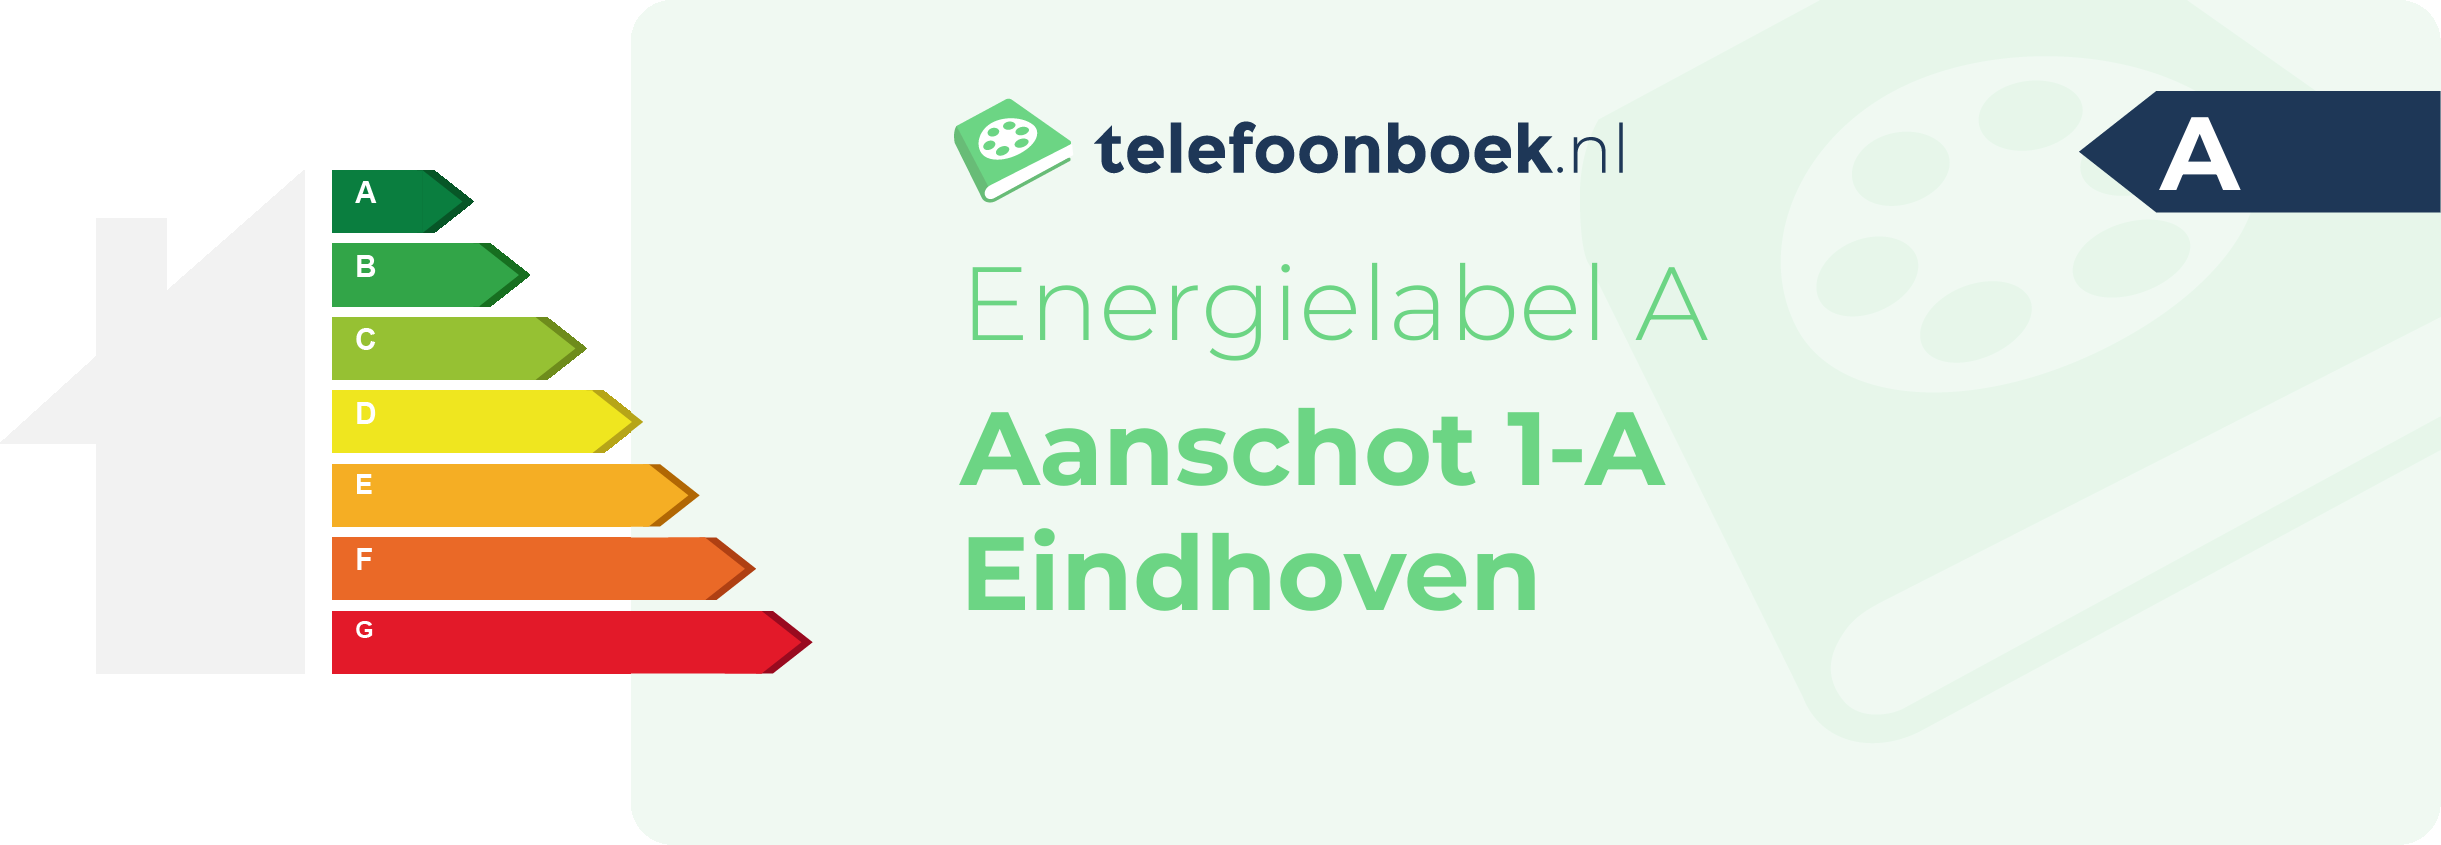 Energielabel Aanschot 1-A Eindhoven